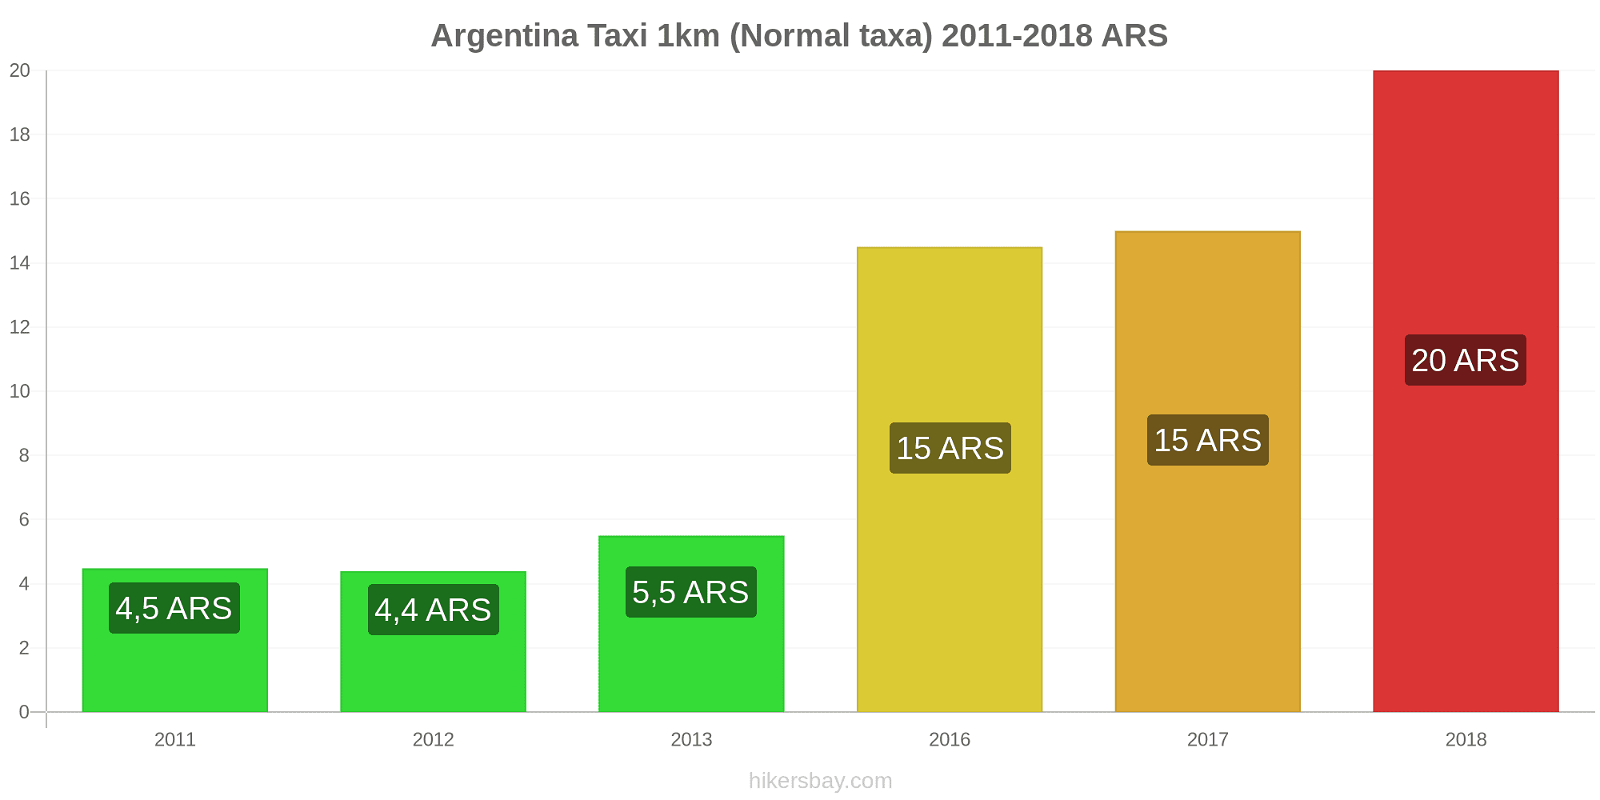 Argentina prisändringar Taxi 1km (Normal taxa) hikersbay.com